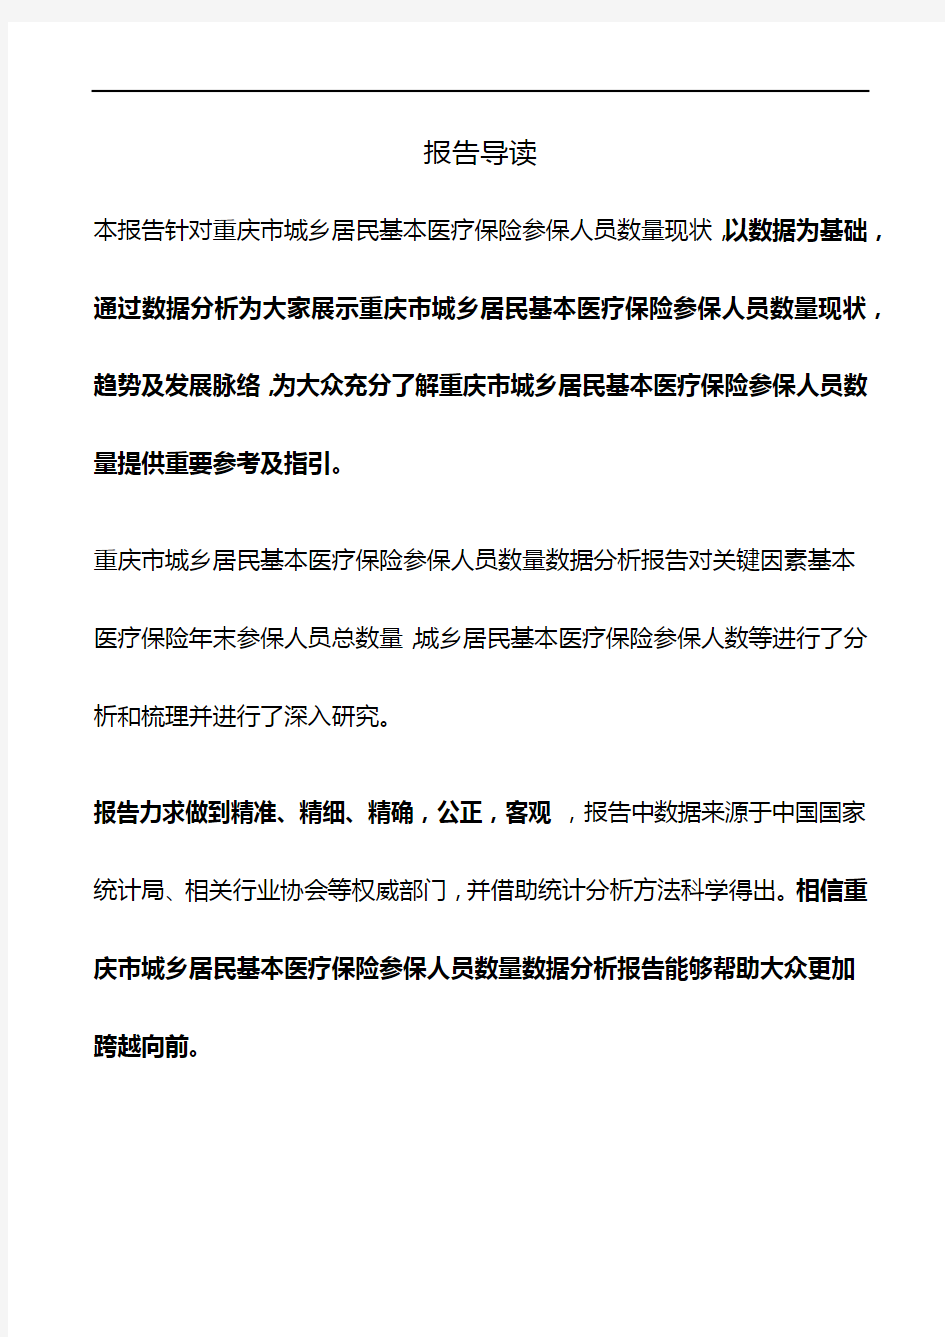 重庆市城乡居民基本医疗保险参保人员数量数据分析报告2019版